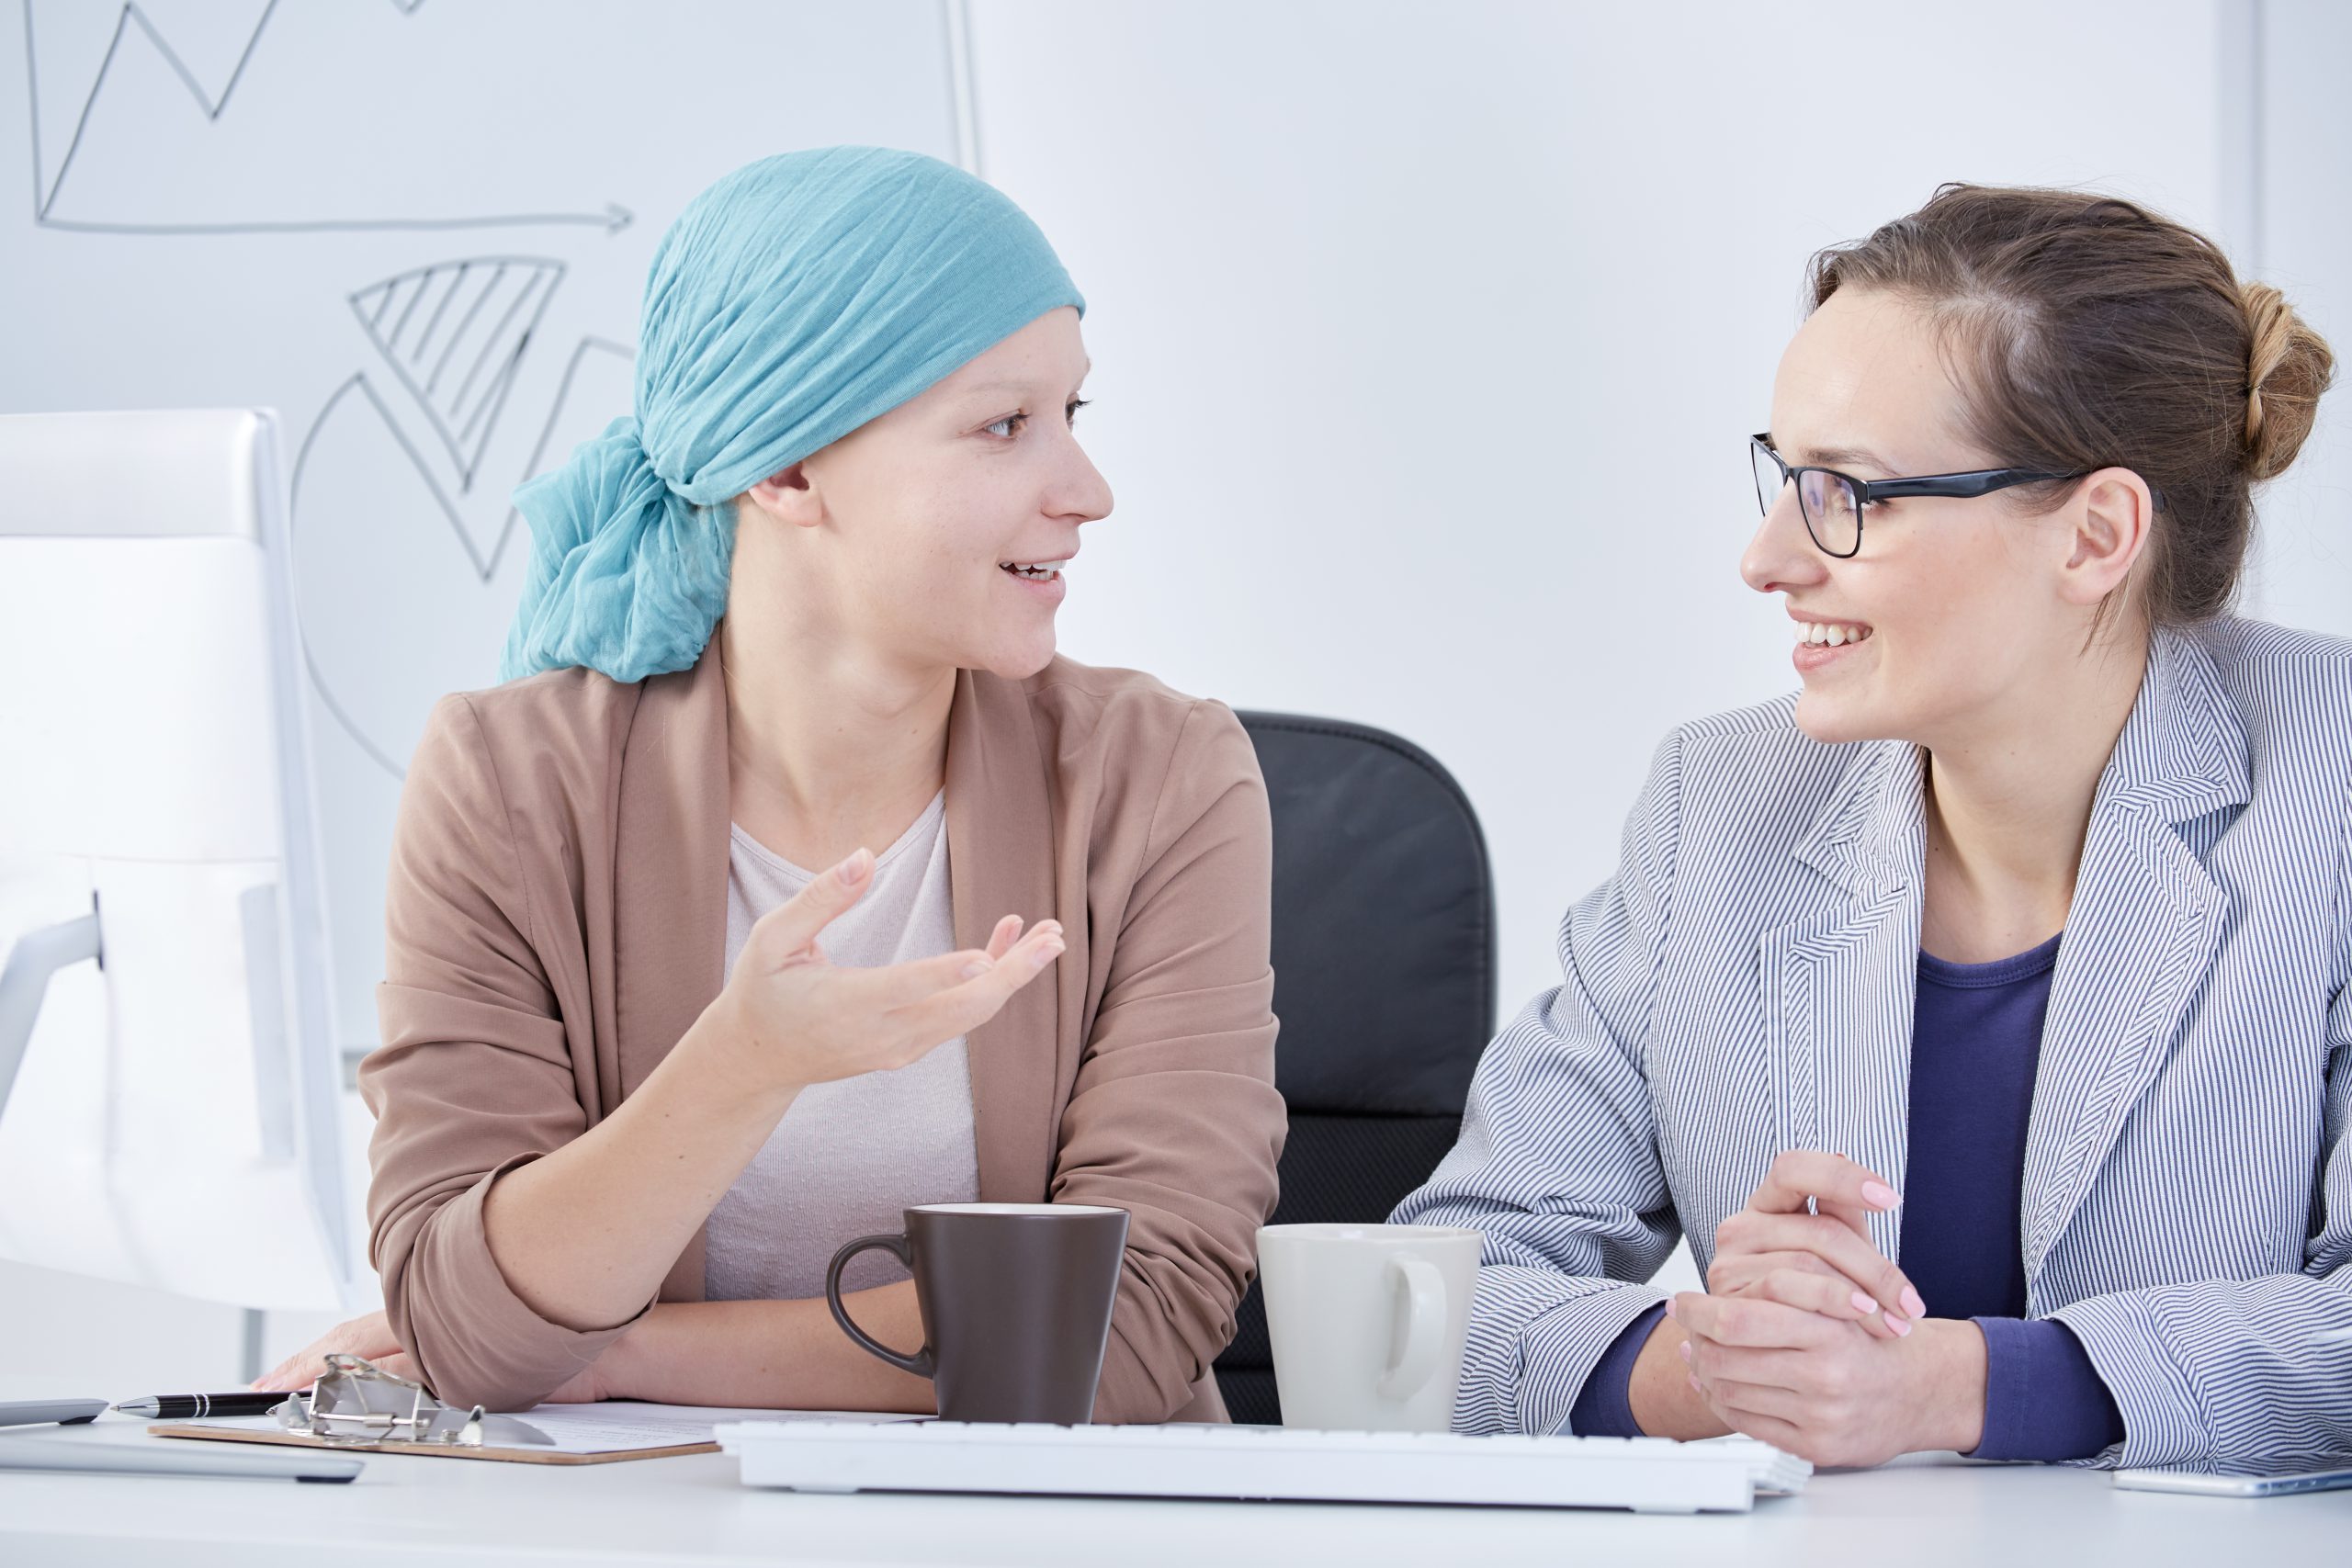 Comunicar un diagnóstico de cáncer en el trabajo